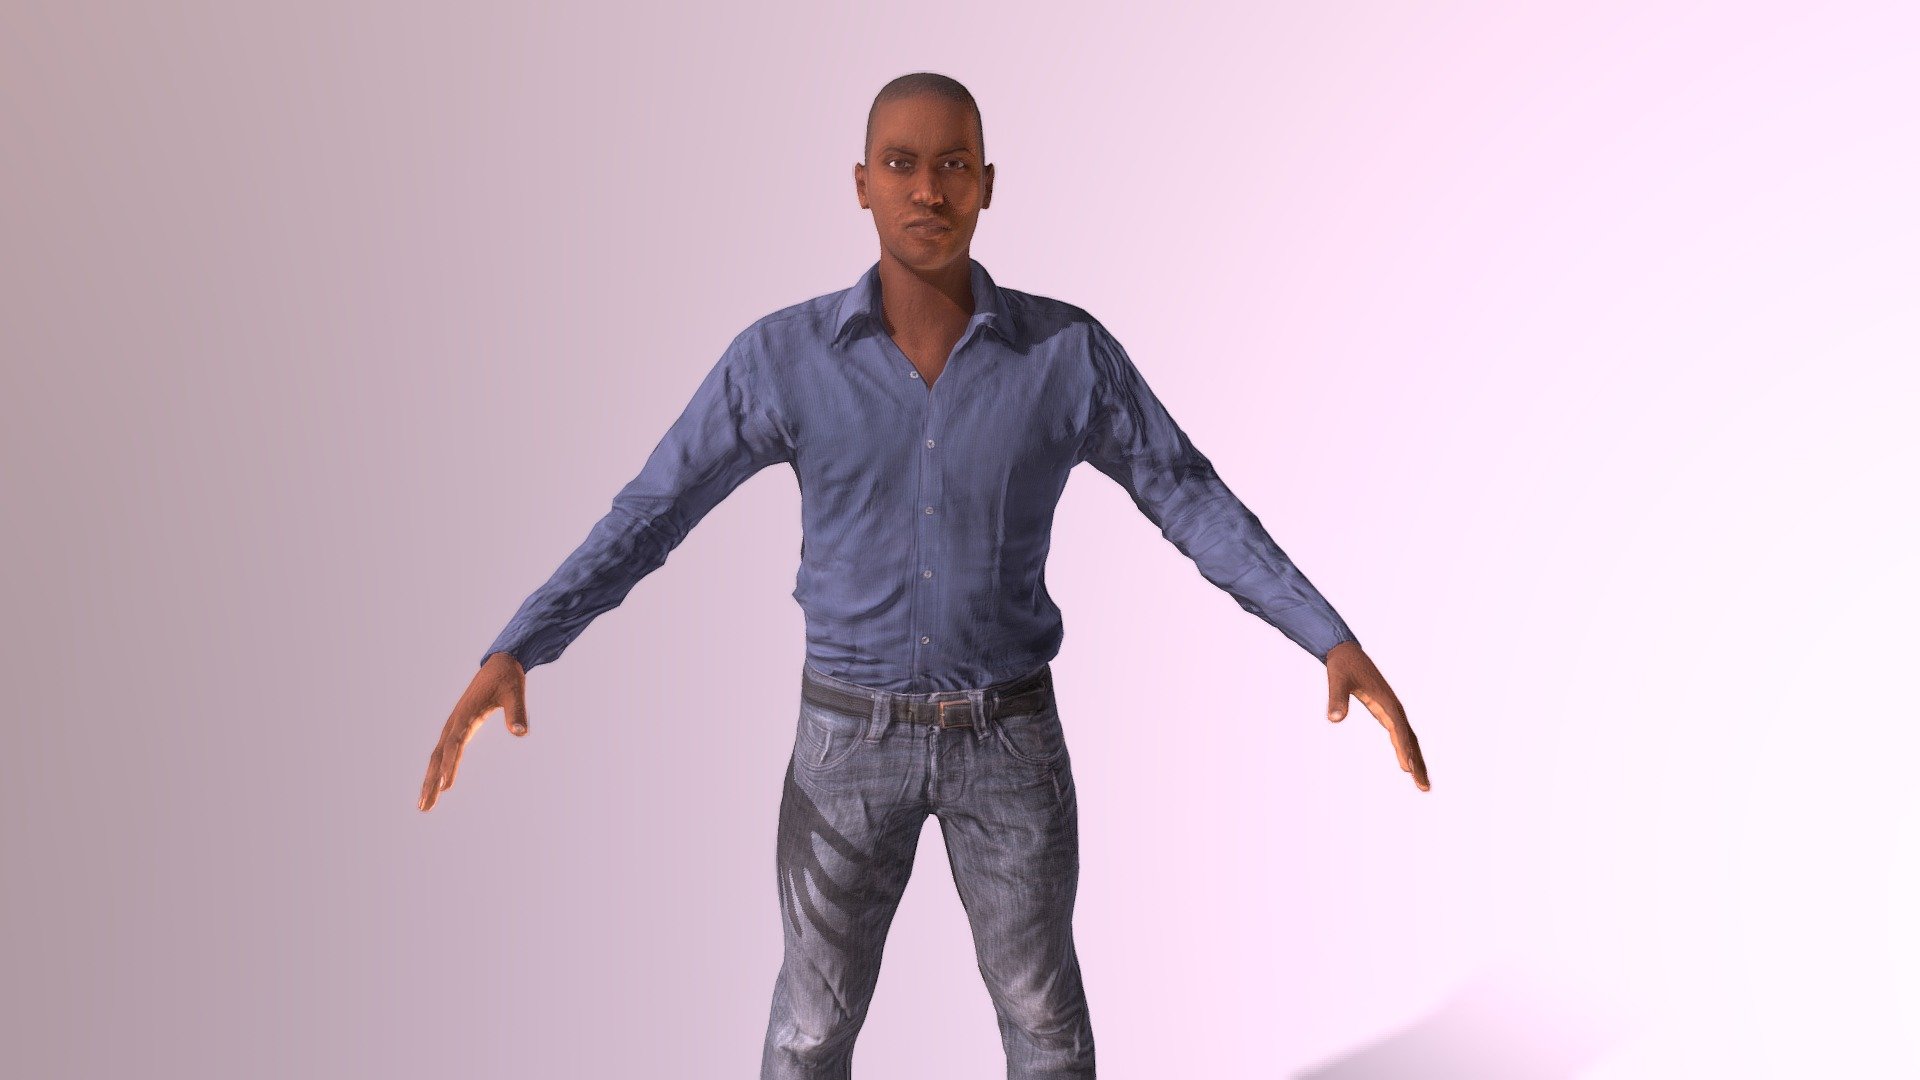 blender 3d human model download free